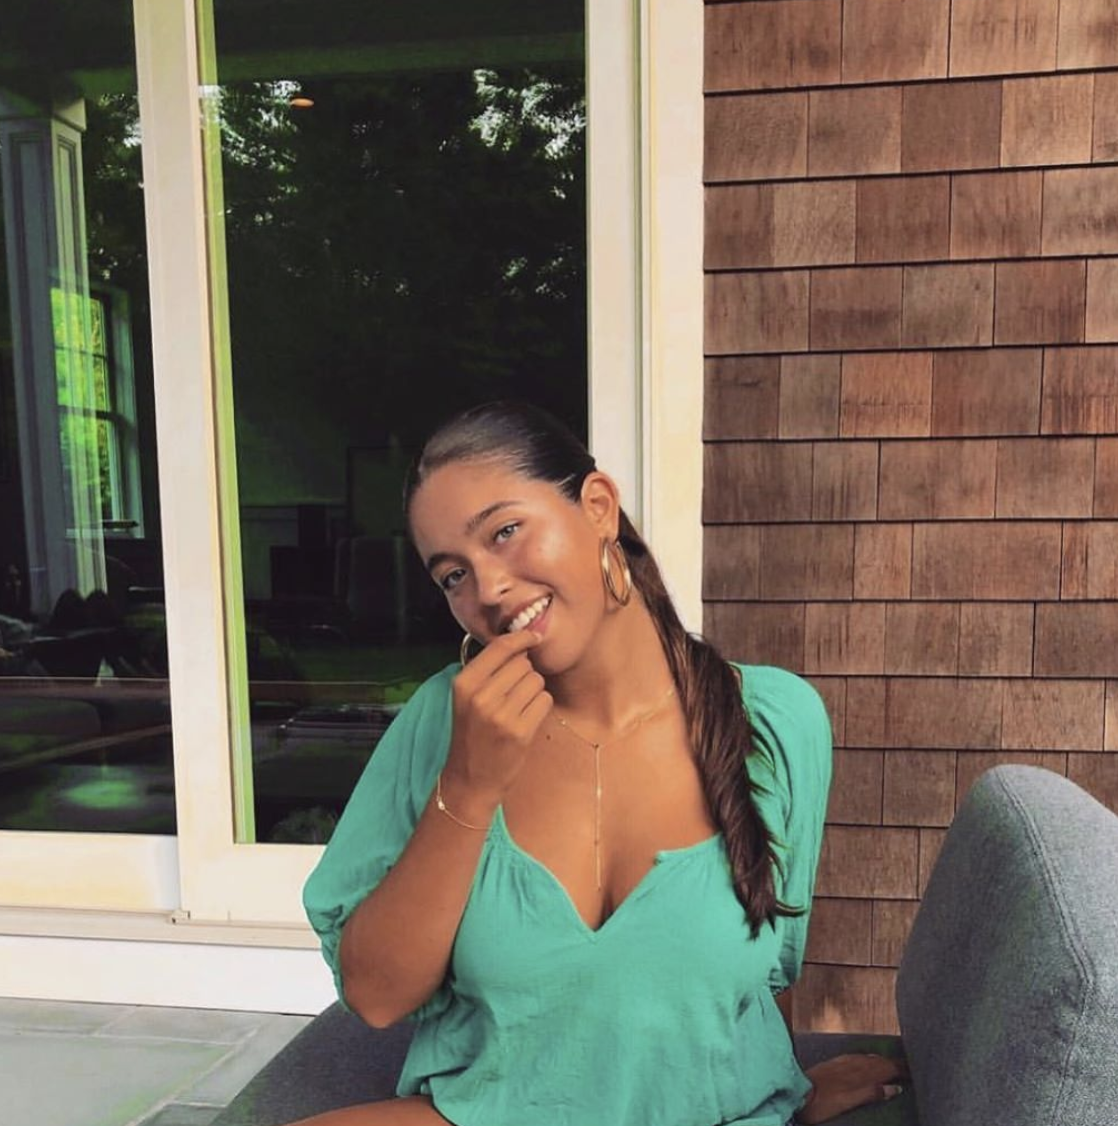 Interracial Xxx Kelly Rippa - Who is Lola Consuelos? - Meet Kelly Ripa's NYU Student Daughter